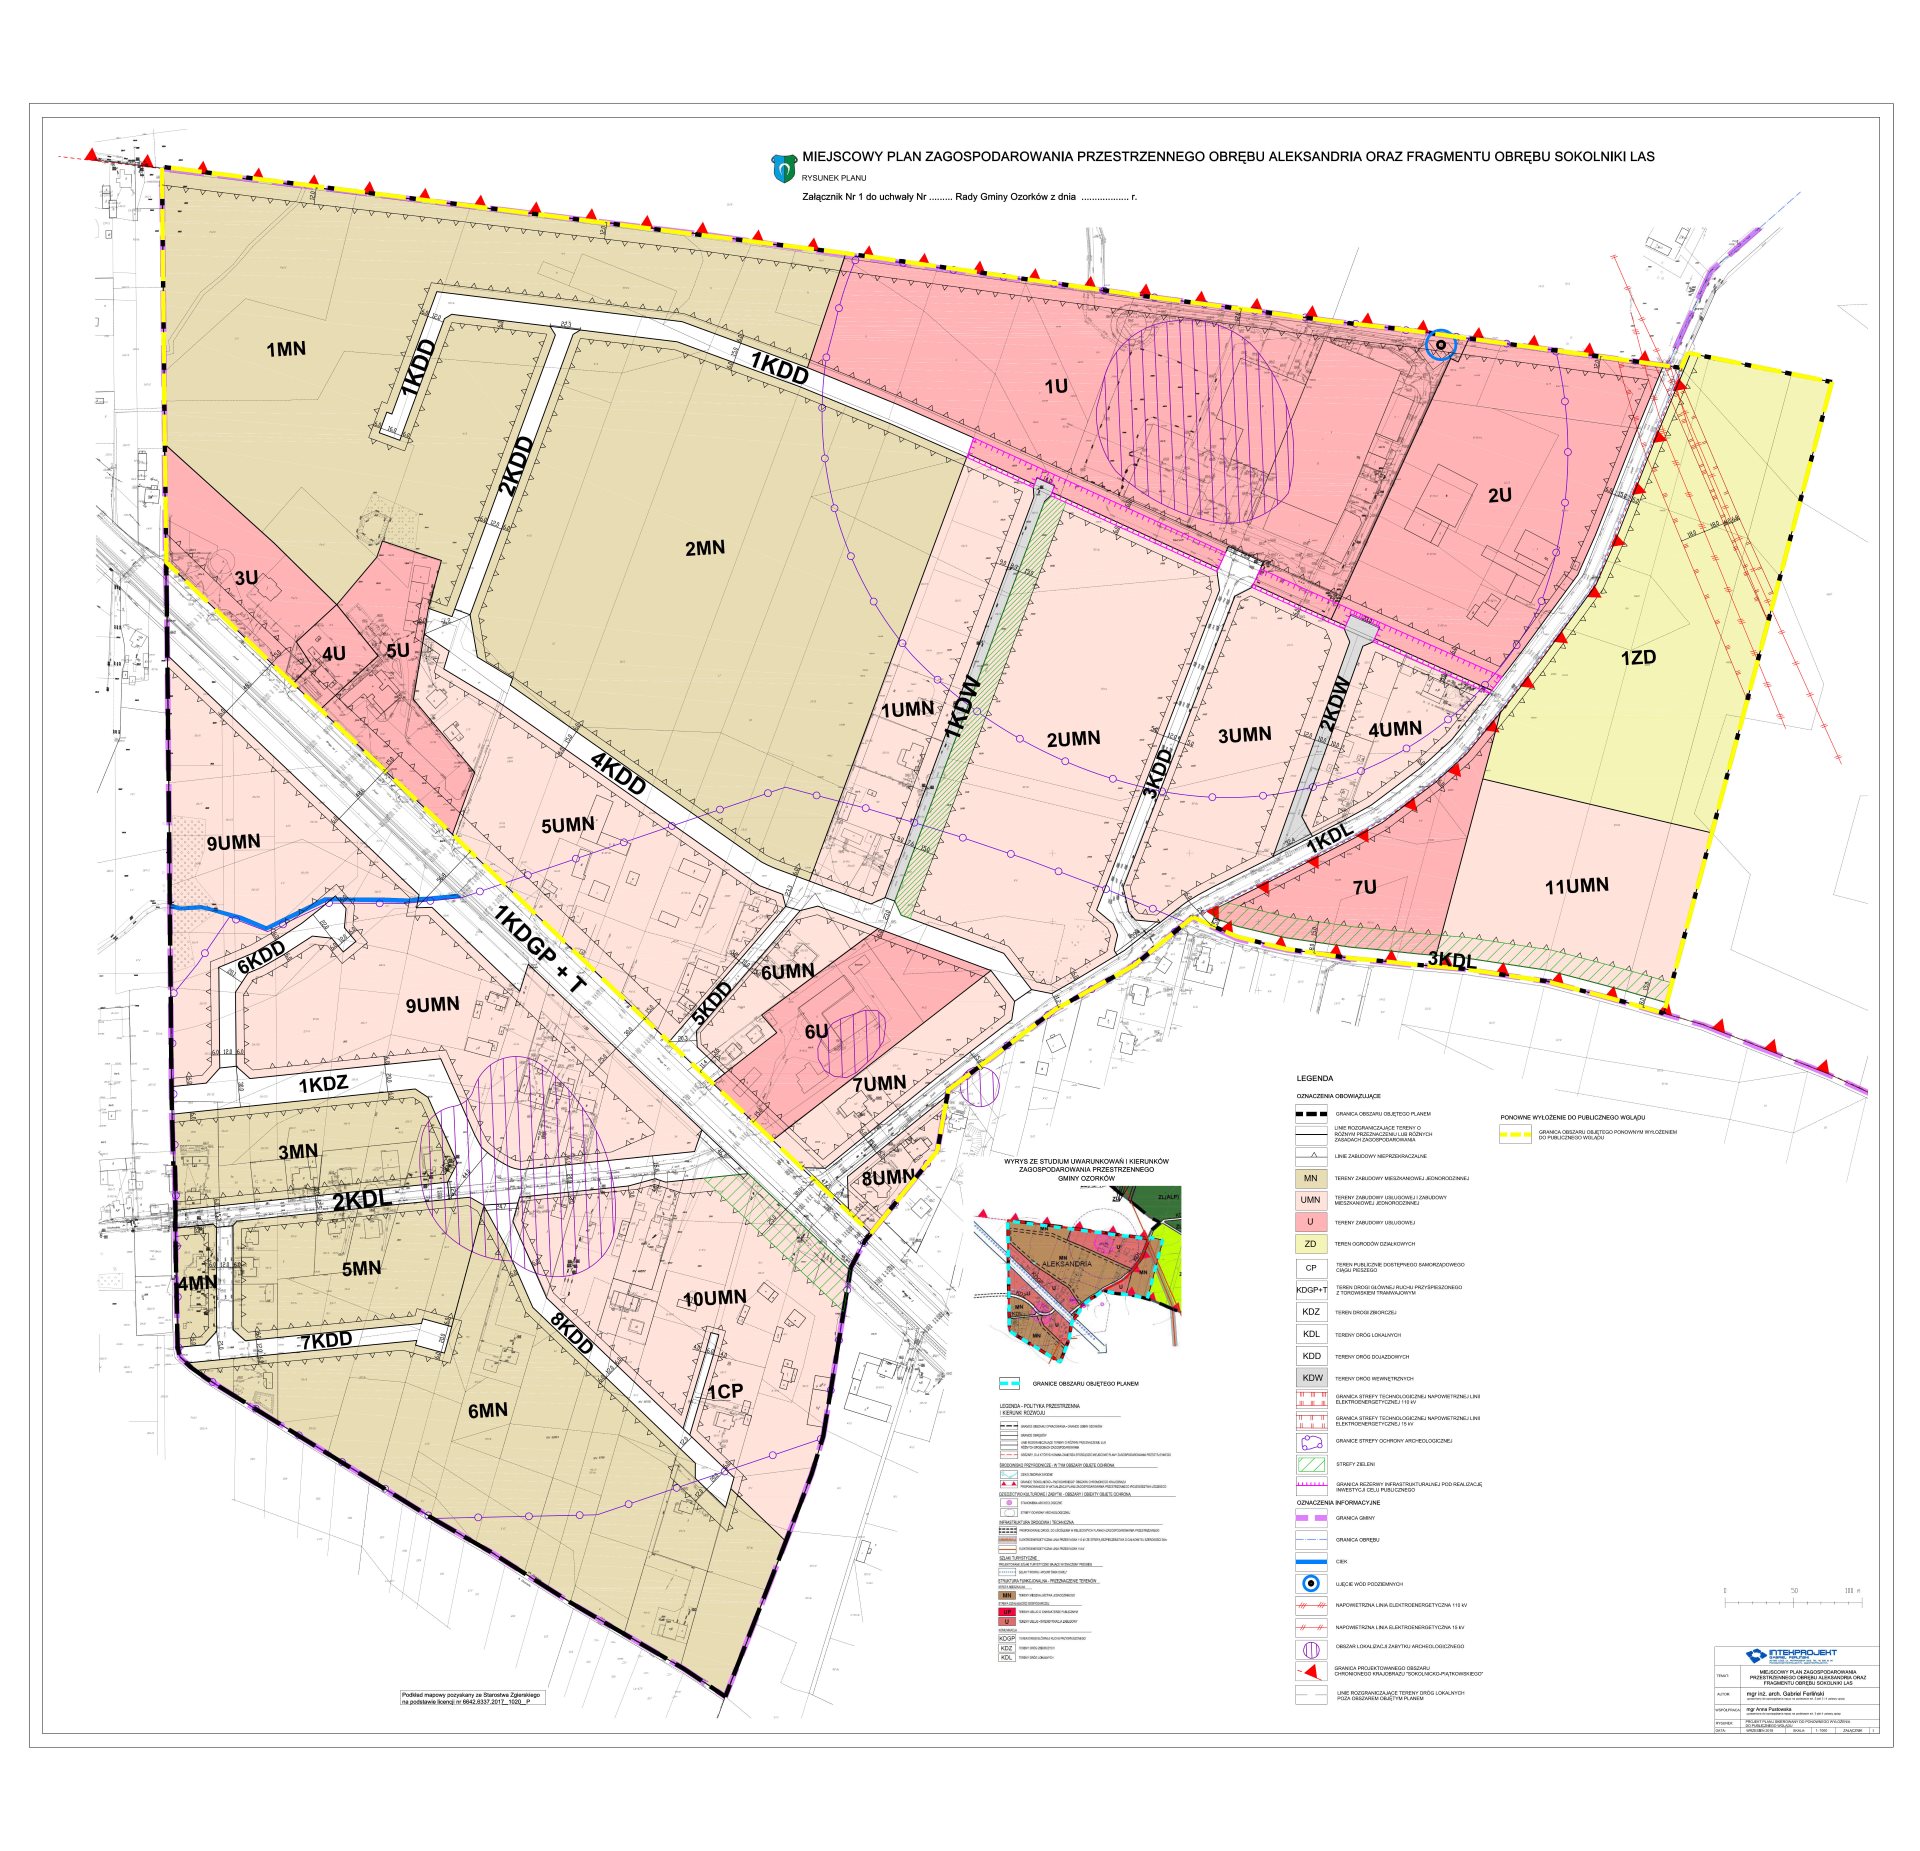 Miejscowy plan zagospodarowania przestrzennego obrębu Aleksandria oraz fragmentu obrębu Sokolniki Las - RYSUNEK PLANU